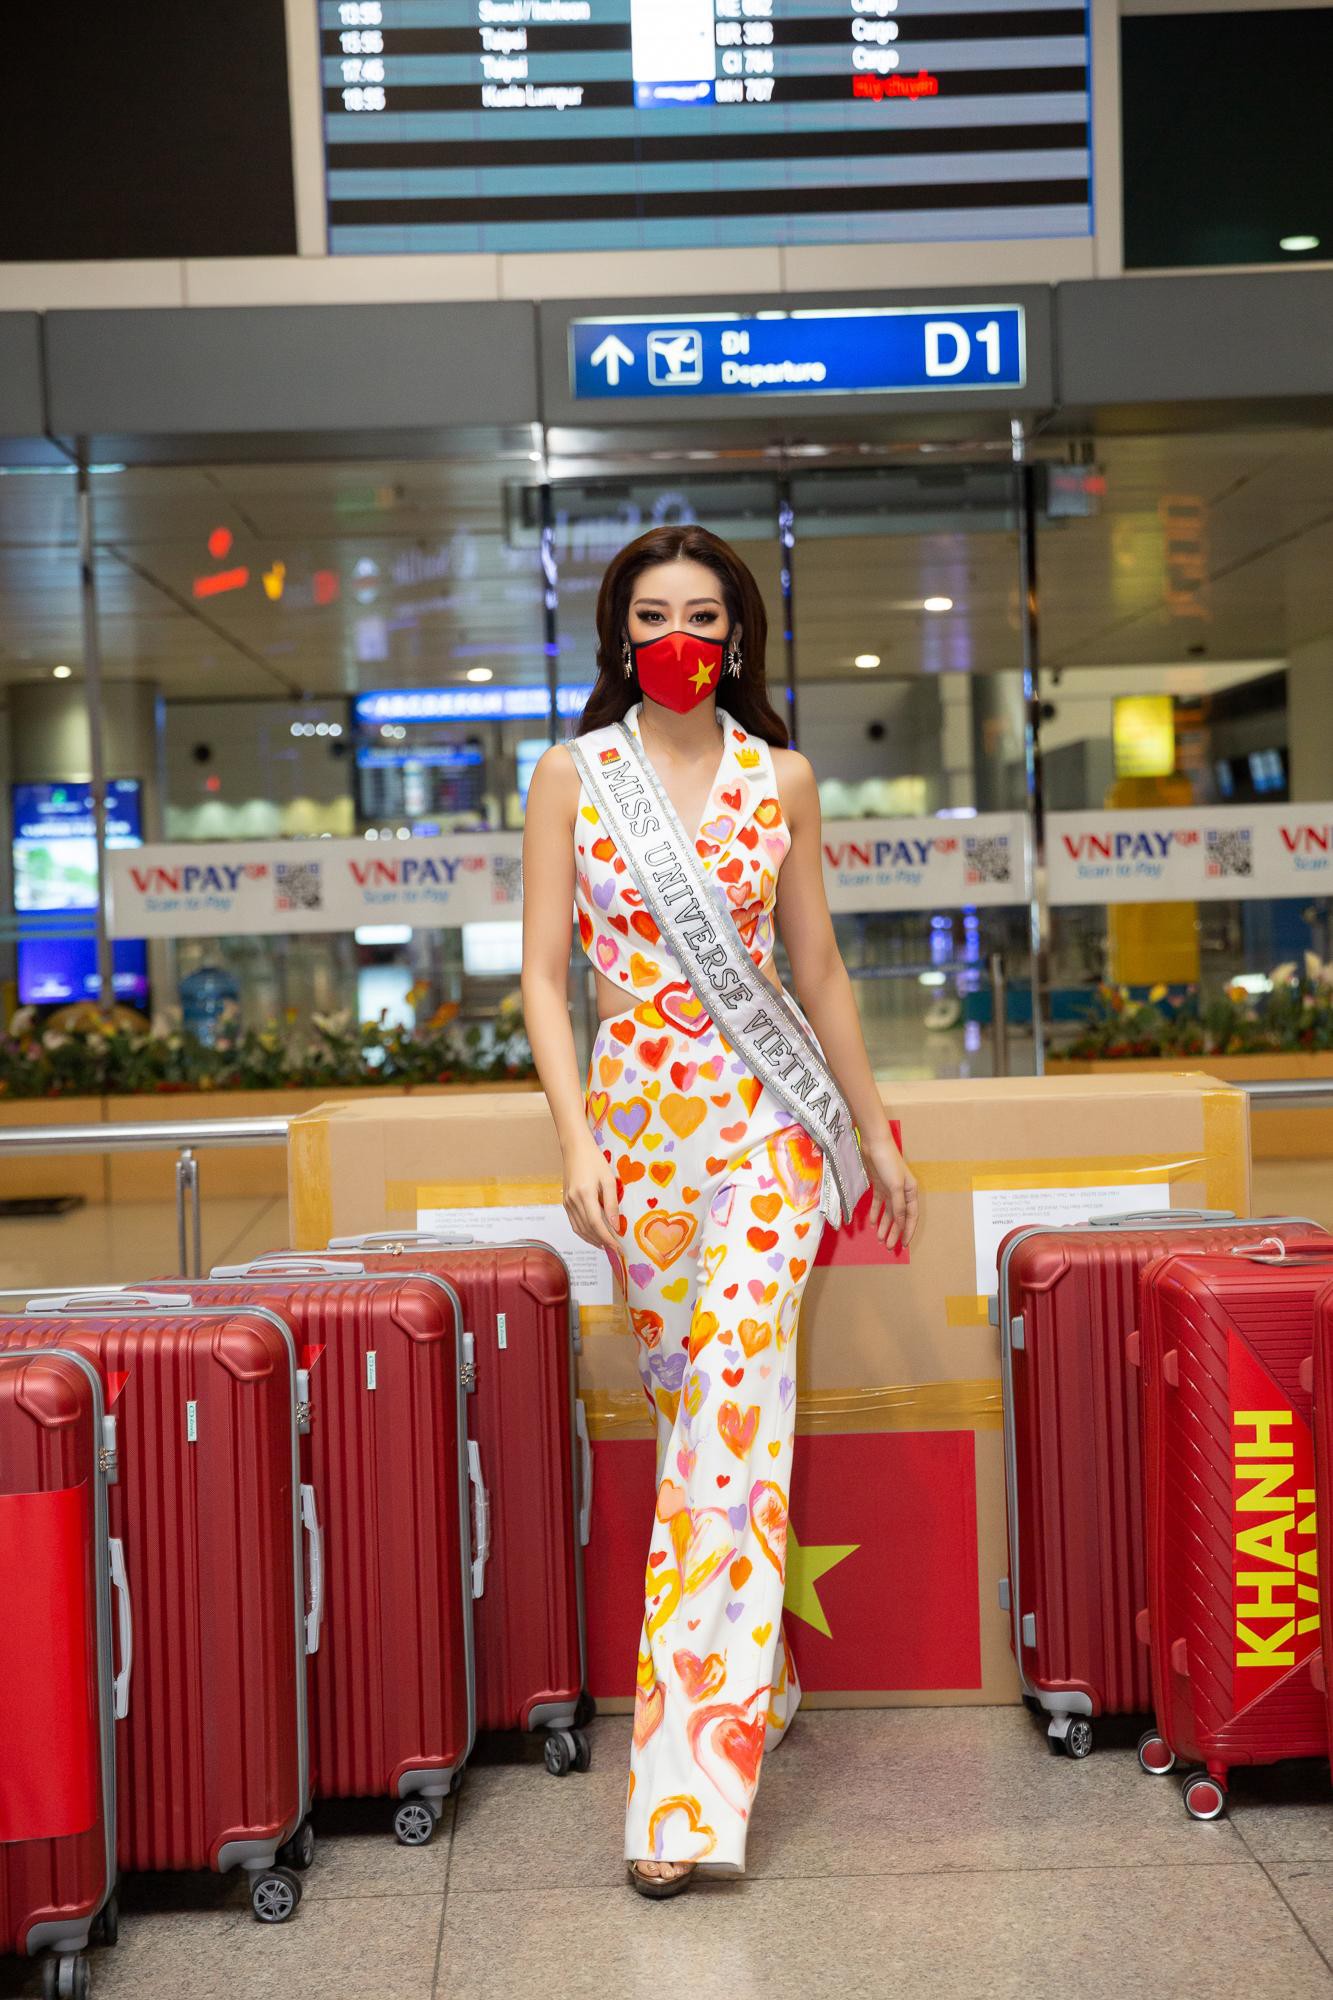 Hoa hậu Khánh Vân liên tục biến hóa phong cách thời trang sân bay khi lên đường sang Mỹ dự thi Miss Universe 2020 - Ảnh 5.